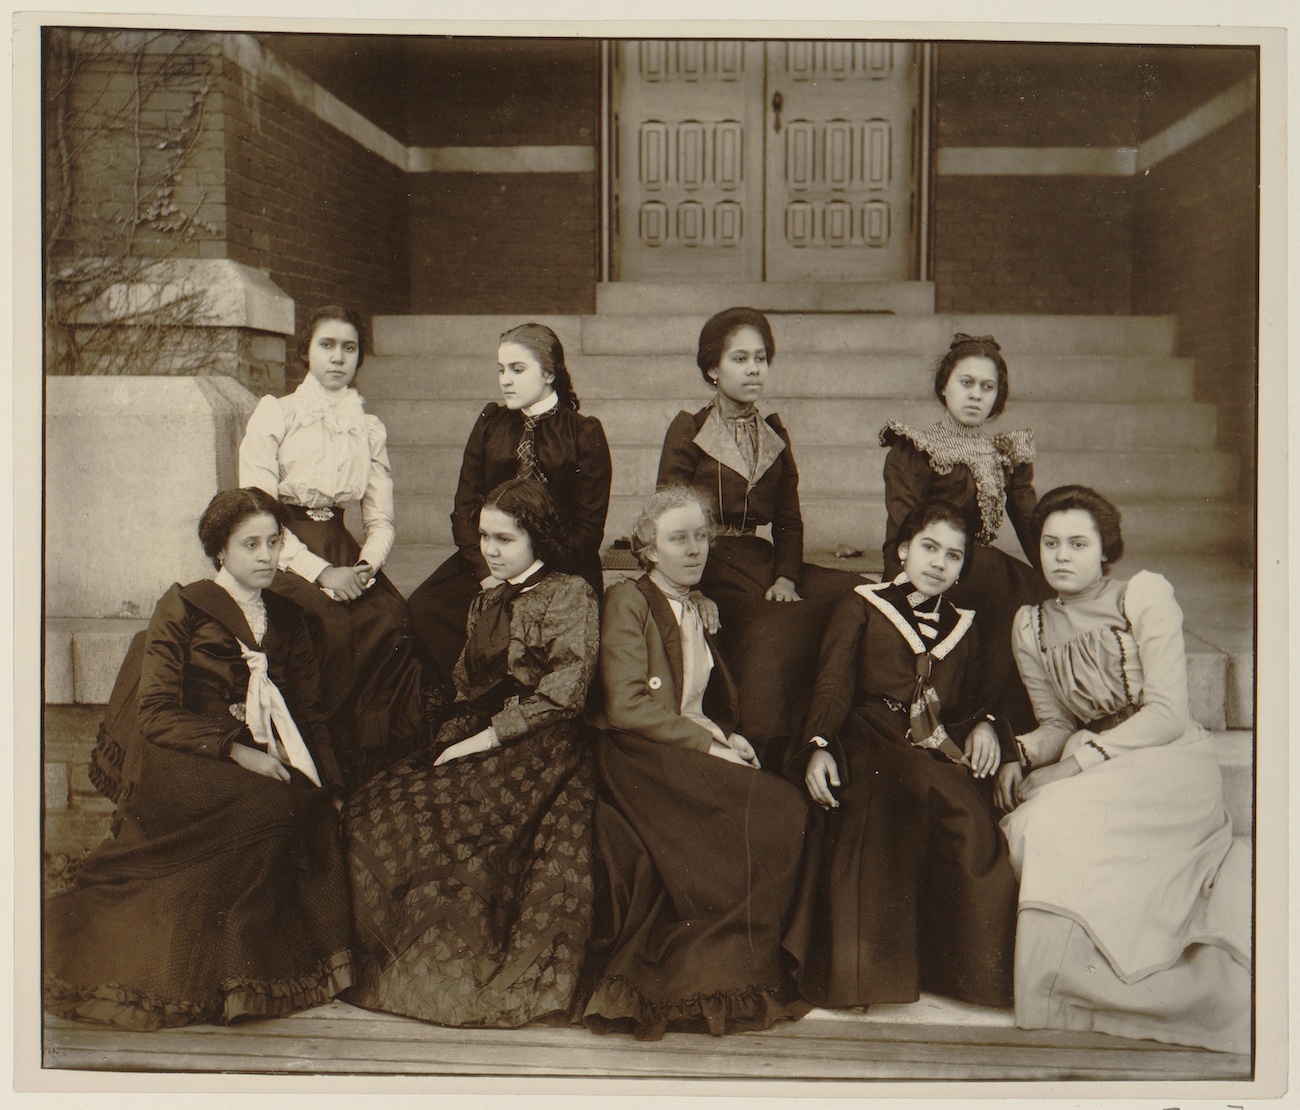 African American women at Atlanta University, c. 1900